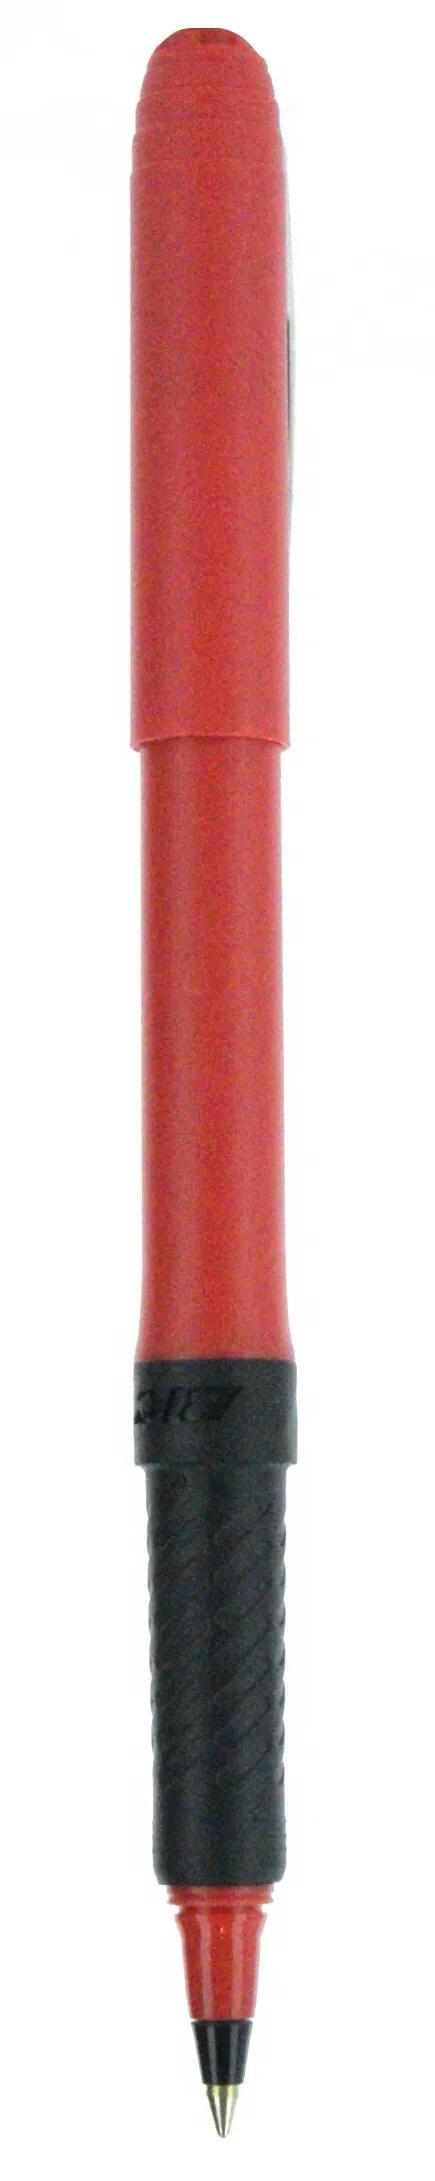 BIC® Grip Roller Pen 97 of 147